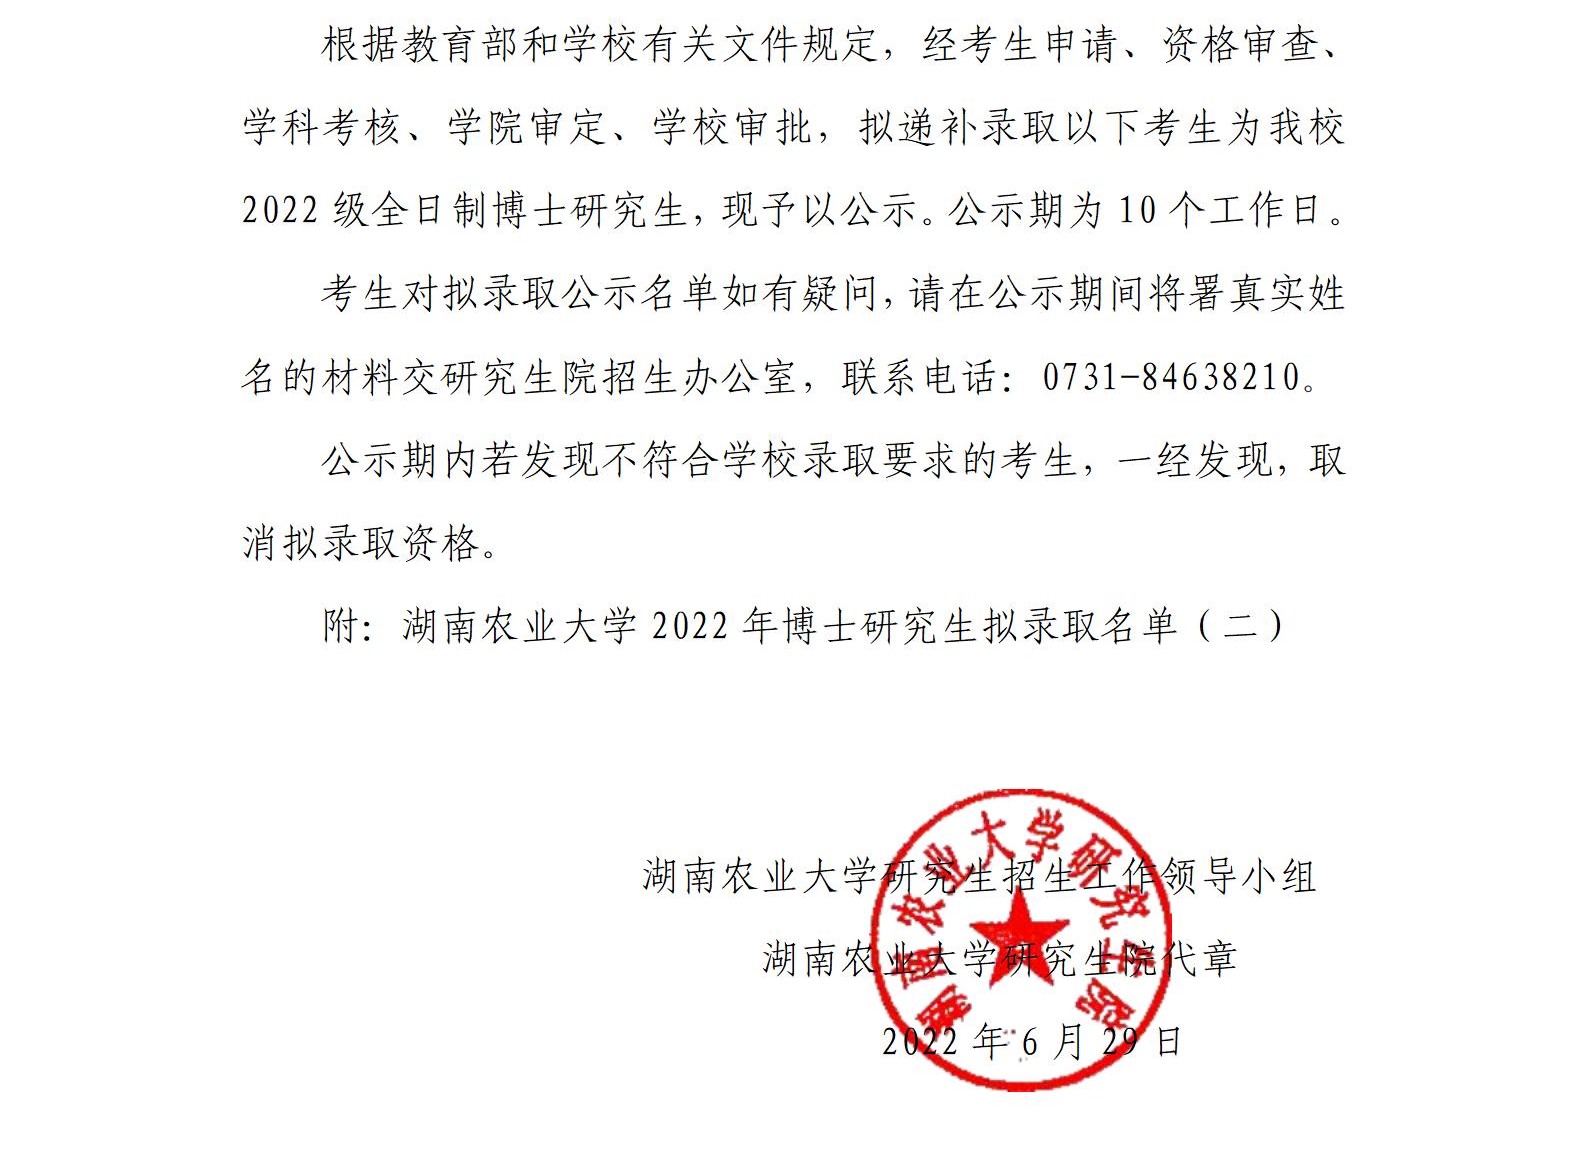 湖南农业大学2022年博士研究生拟录取名单公示_01.jpg